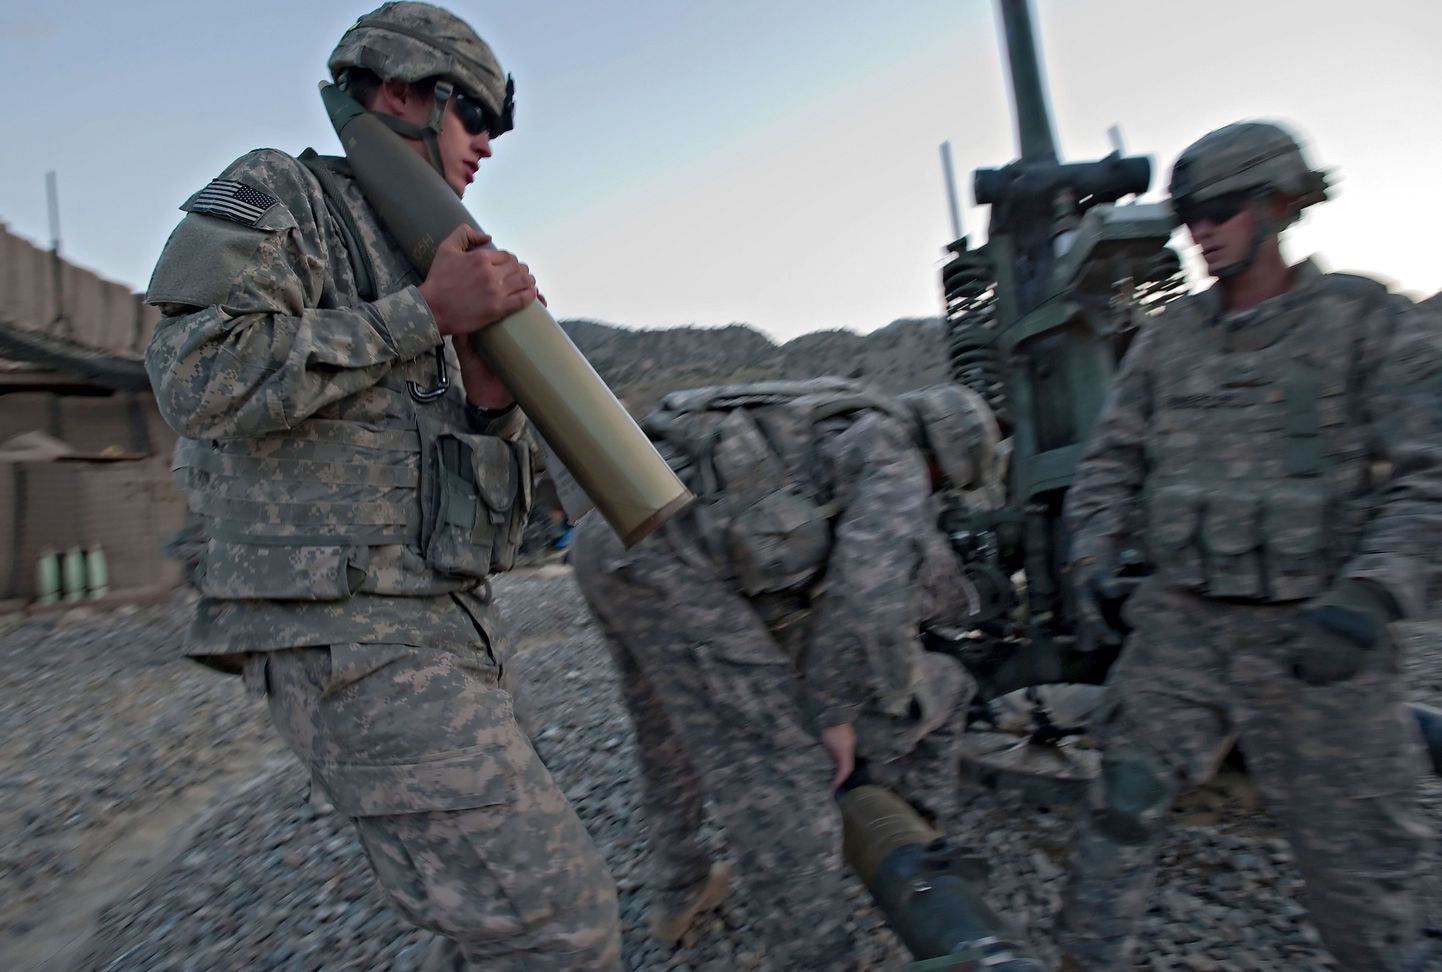 Ameerika Ühendriikide sõdurid Afganistanis Paktia provintsis.